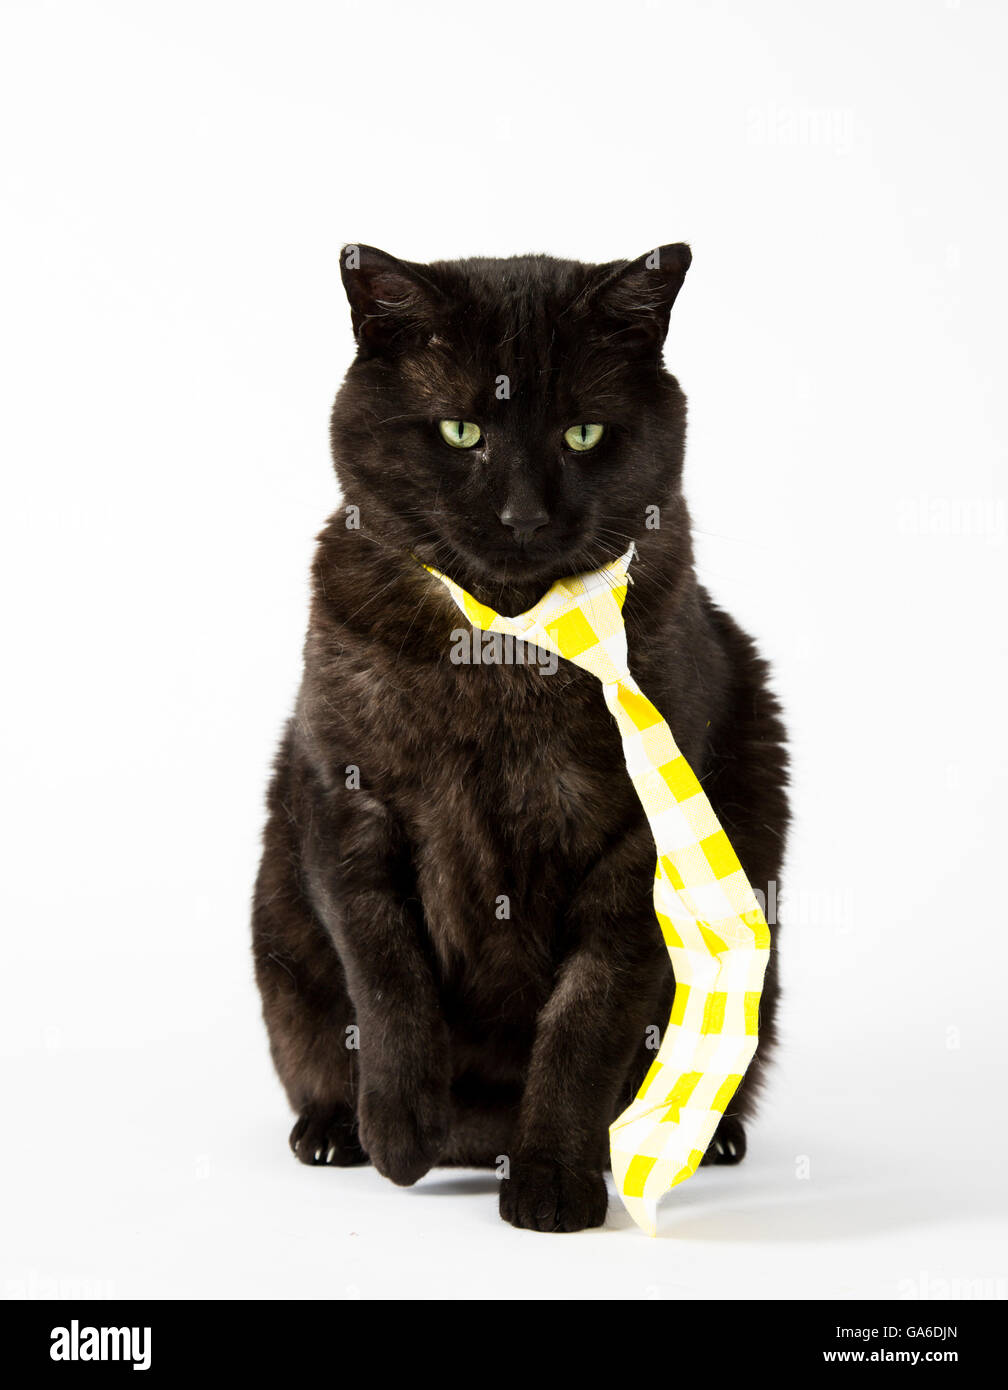 Un chat noir à cravate jaune sur un fond blanc Photo Stock - Alamy